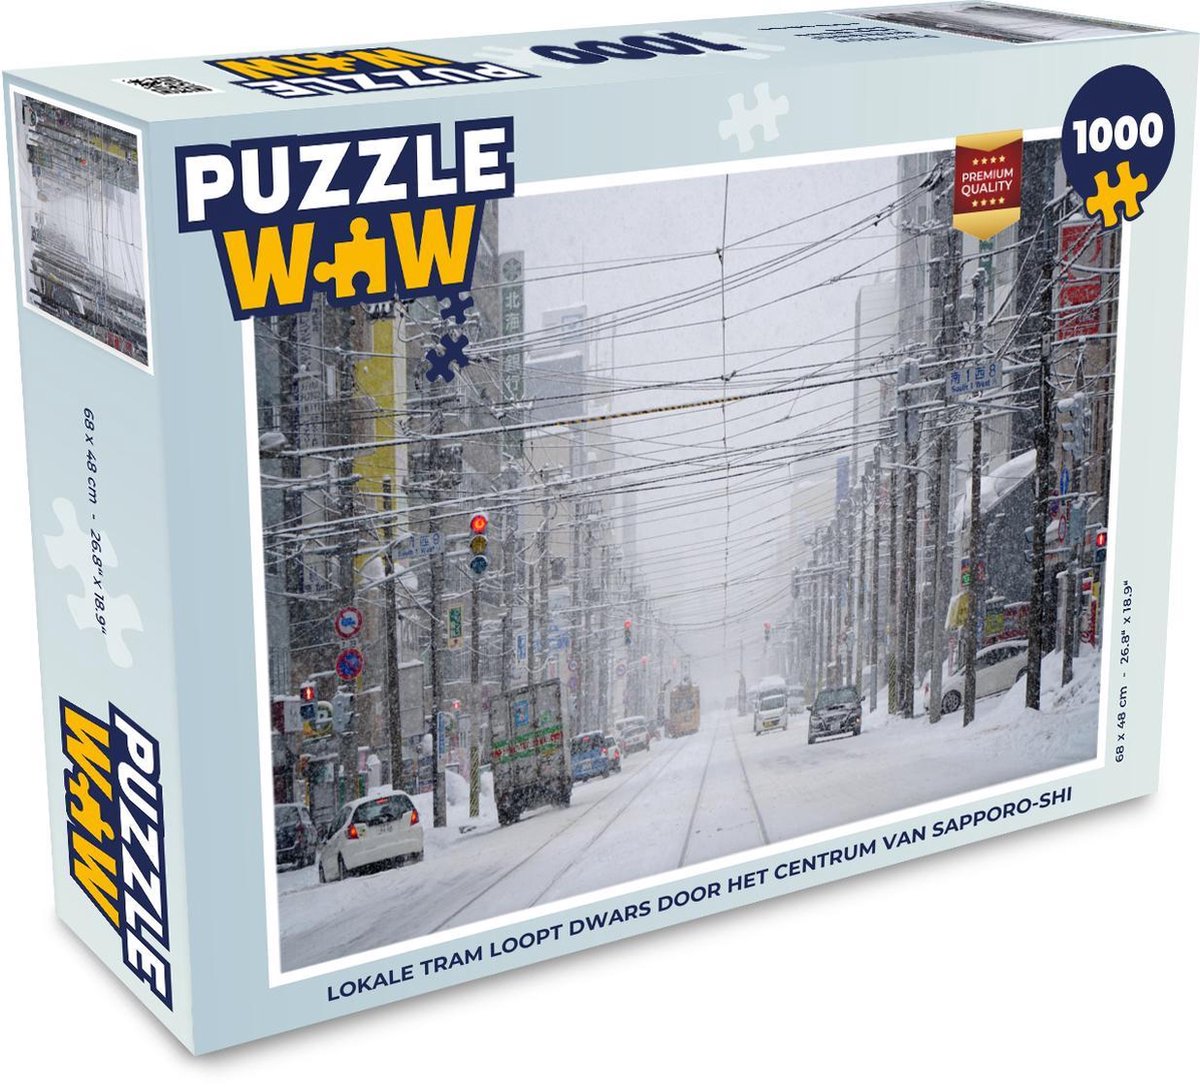 Puzzel 1000 stukjes volwassenen Sapporo-shi 1000 stukjes - Lokale tram loopt dwars door het centrum van Sapporo-shi  - PuzzleWow heeft +100000 puzzels